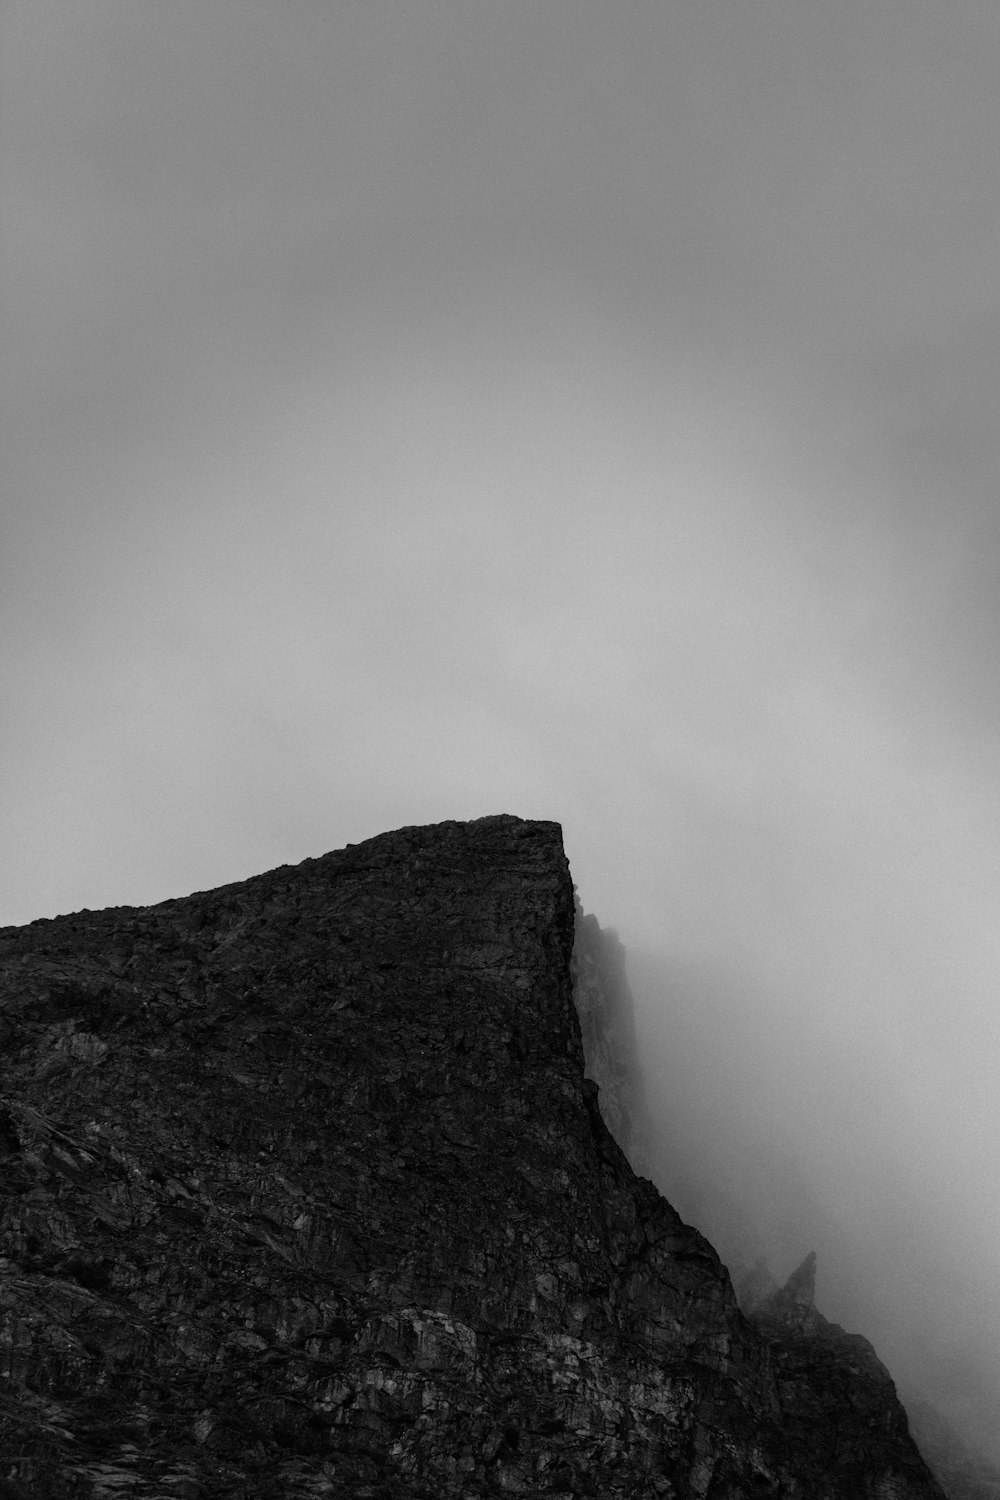 a mountain with a foggy sky